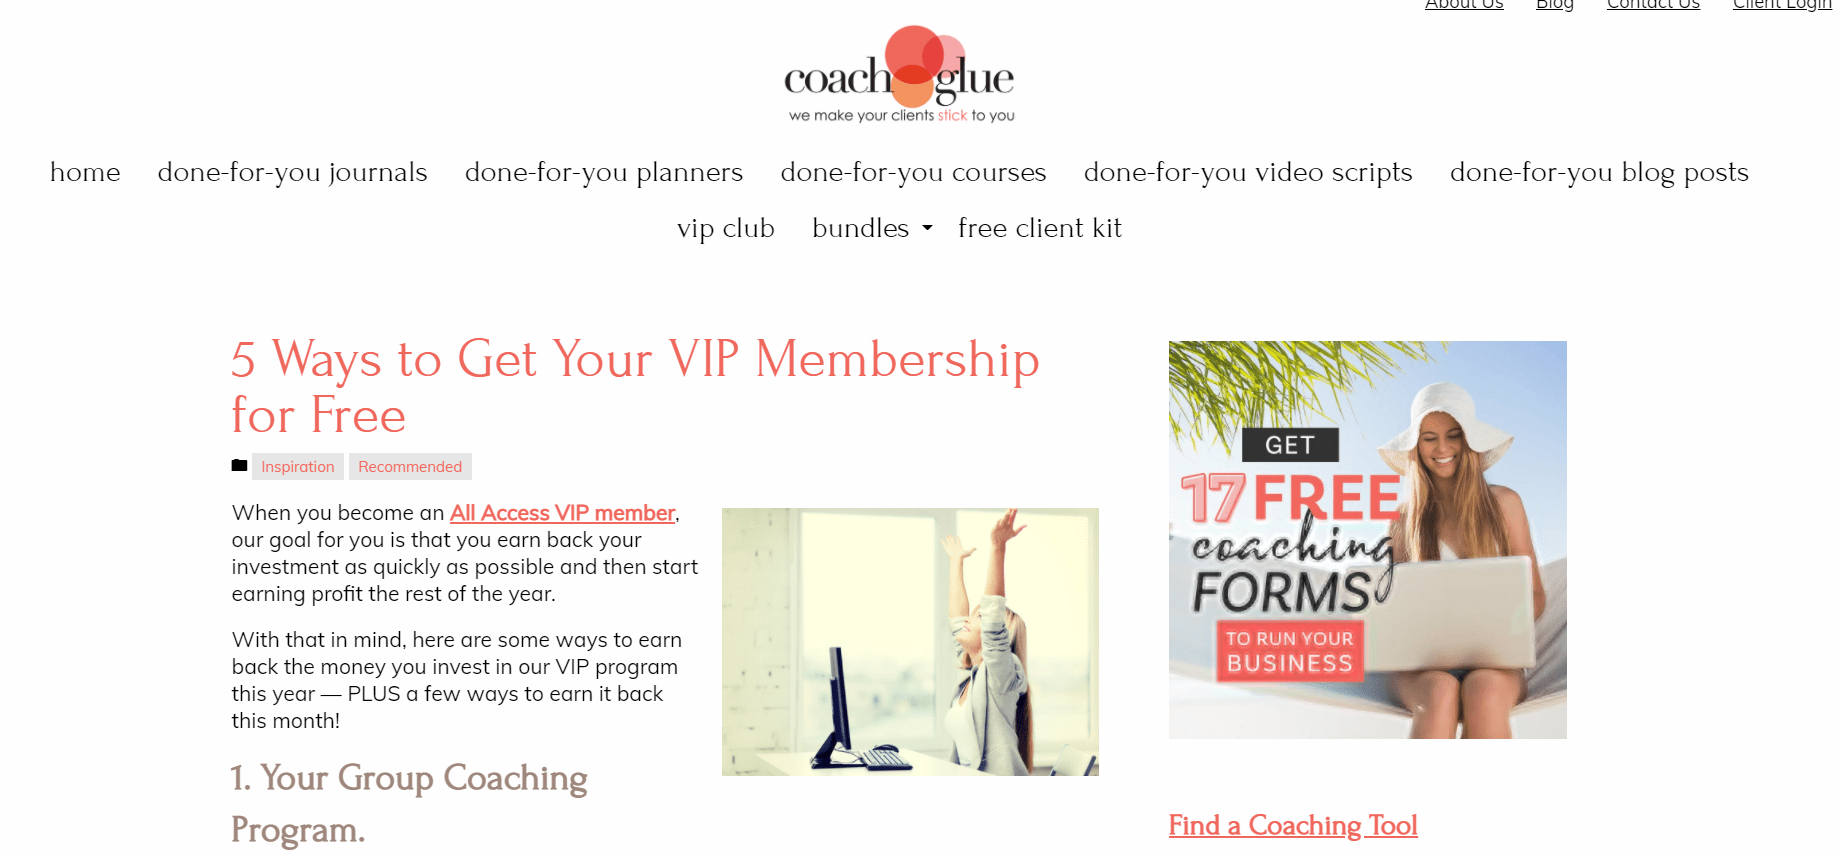 Coachglue-VIP-Membership